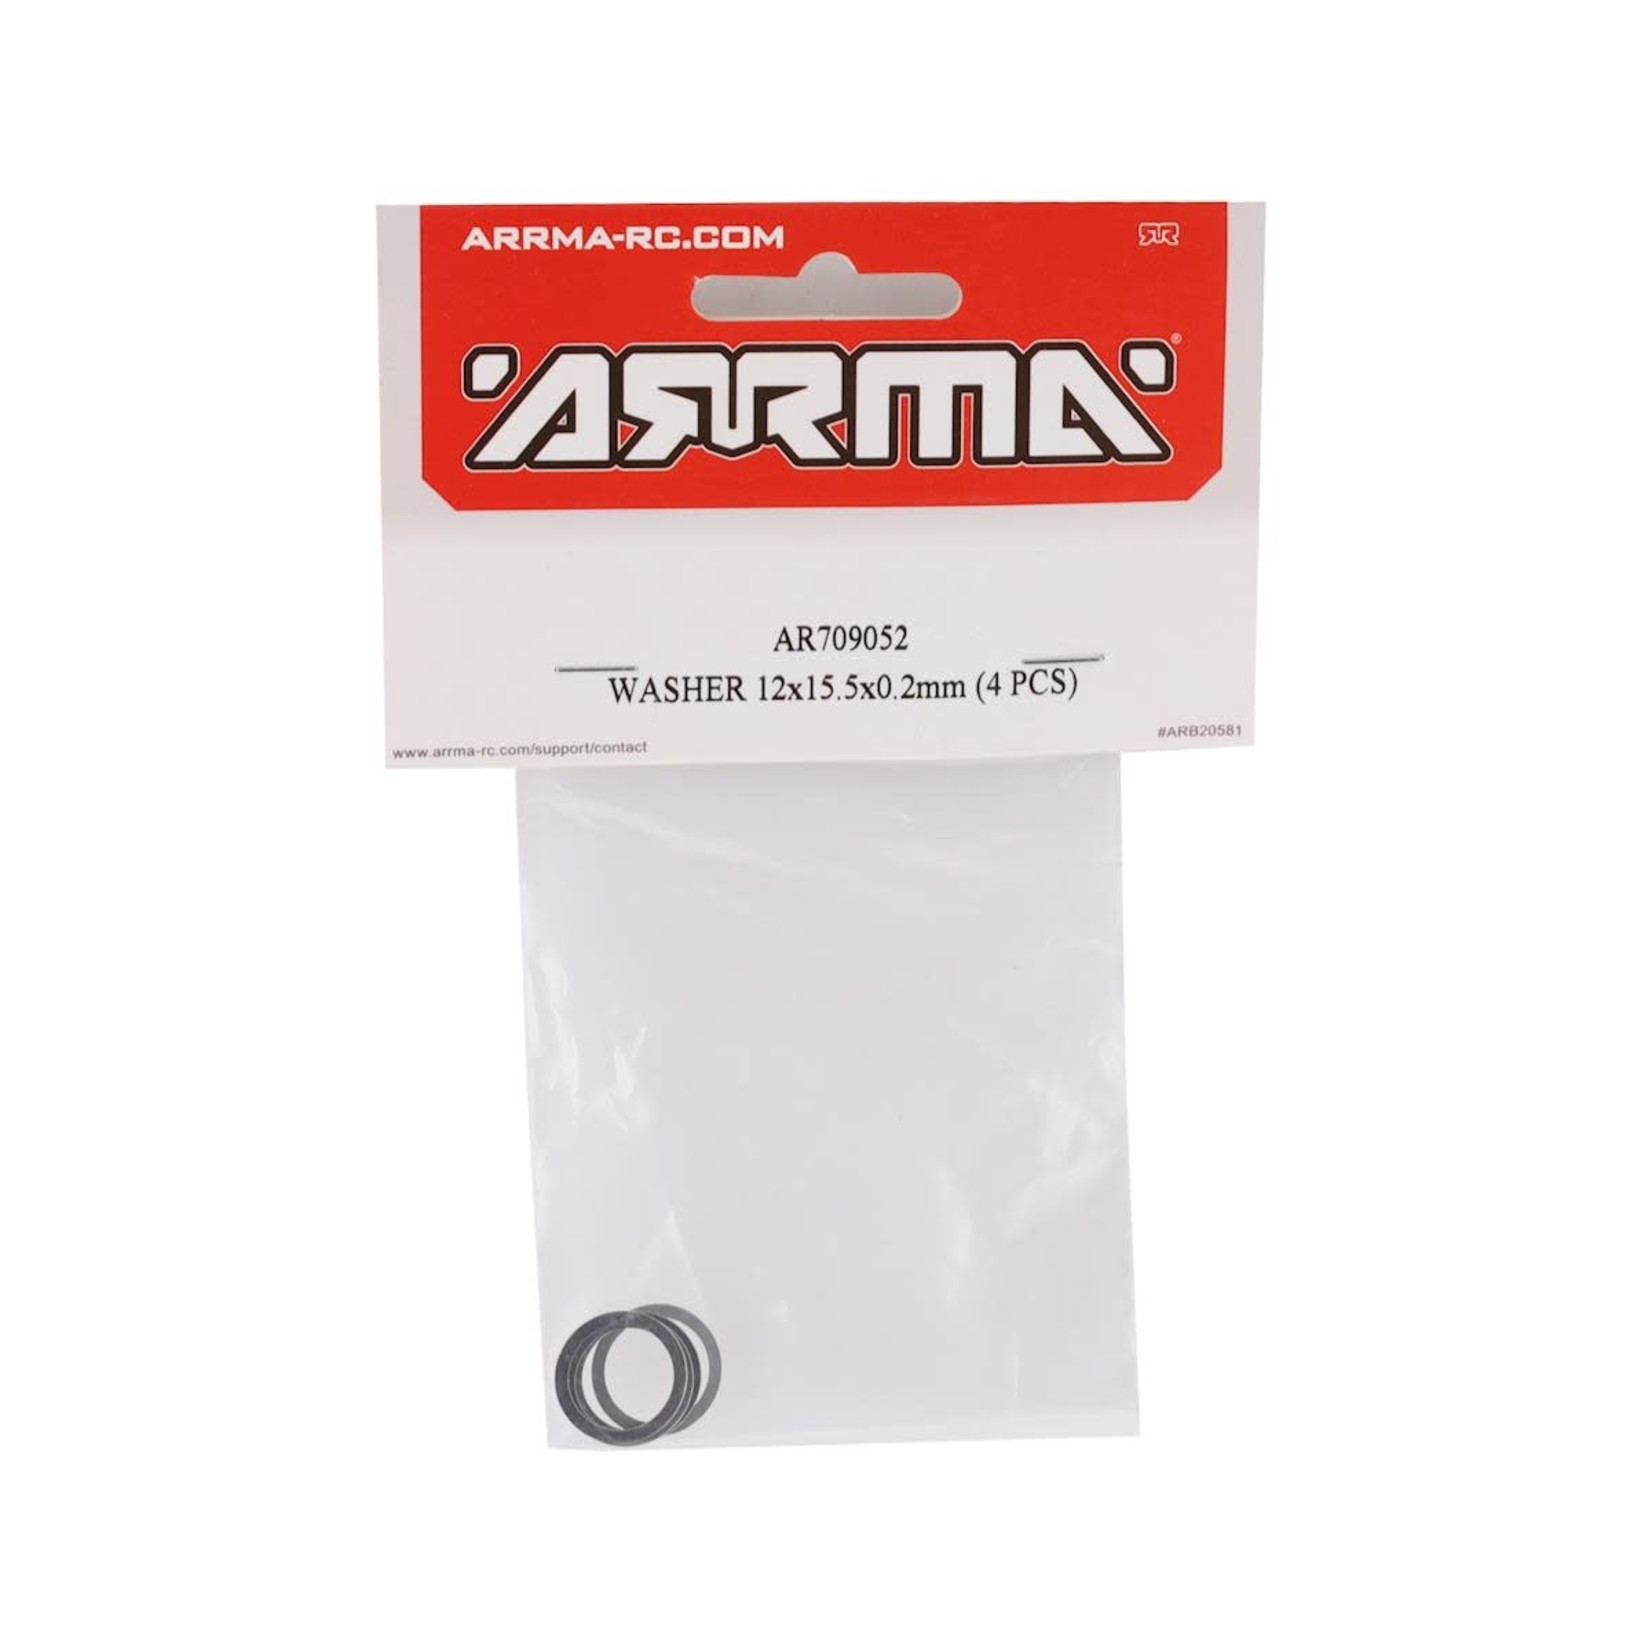 ARRMA Arrma Washer (4) (12x15.5x0.2mm) #AR709052